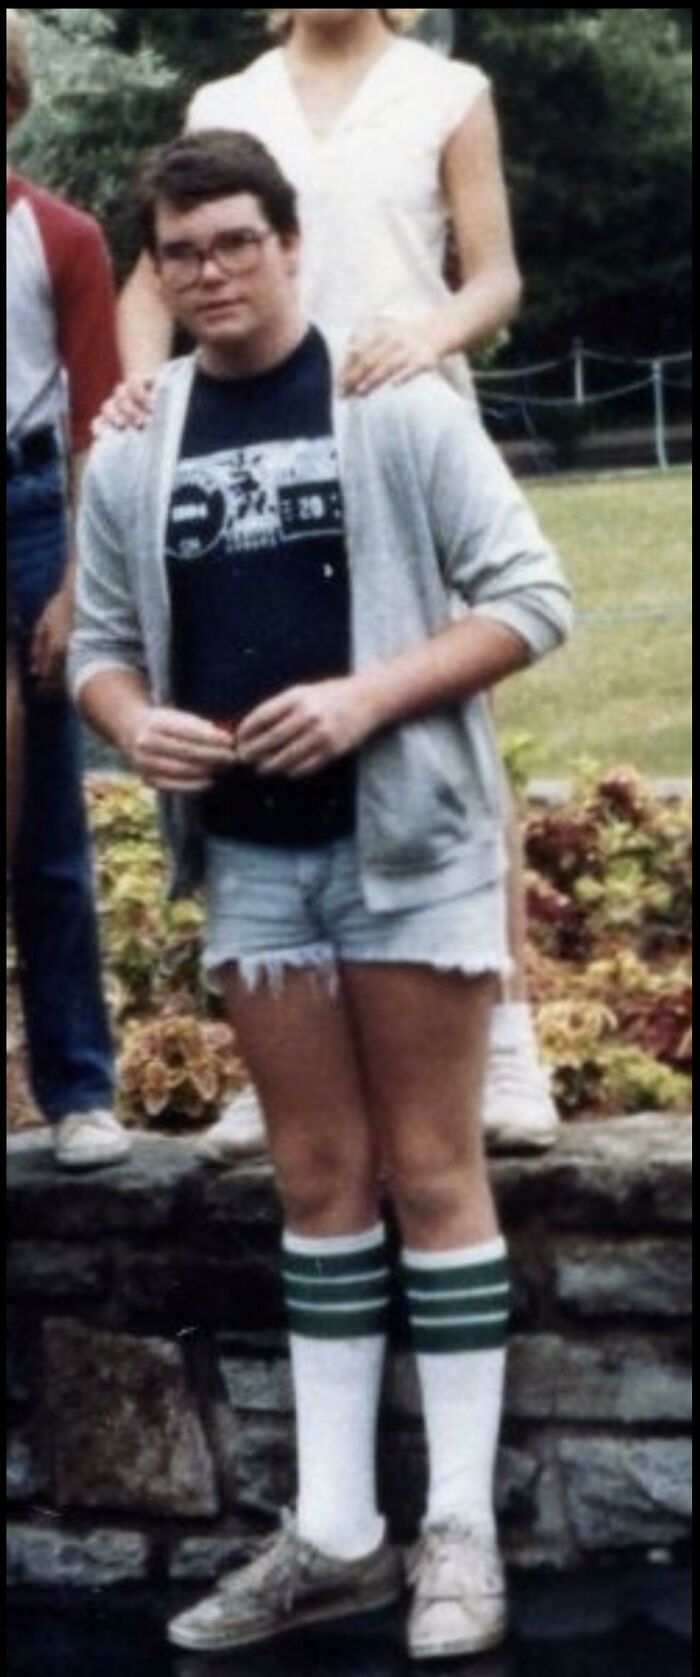 Kings Island, Ohio en 1984. Mientras que a mi yo de 14 años le gustaban los pantalones cortos, hoy me enfurece que mis padres me permitieran salir de casa así